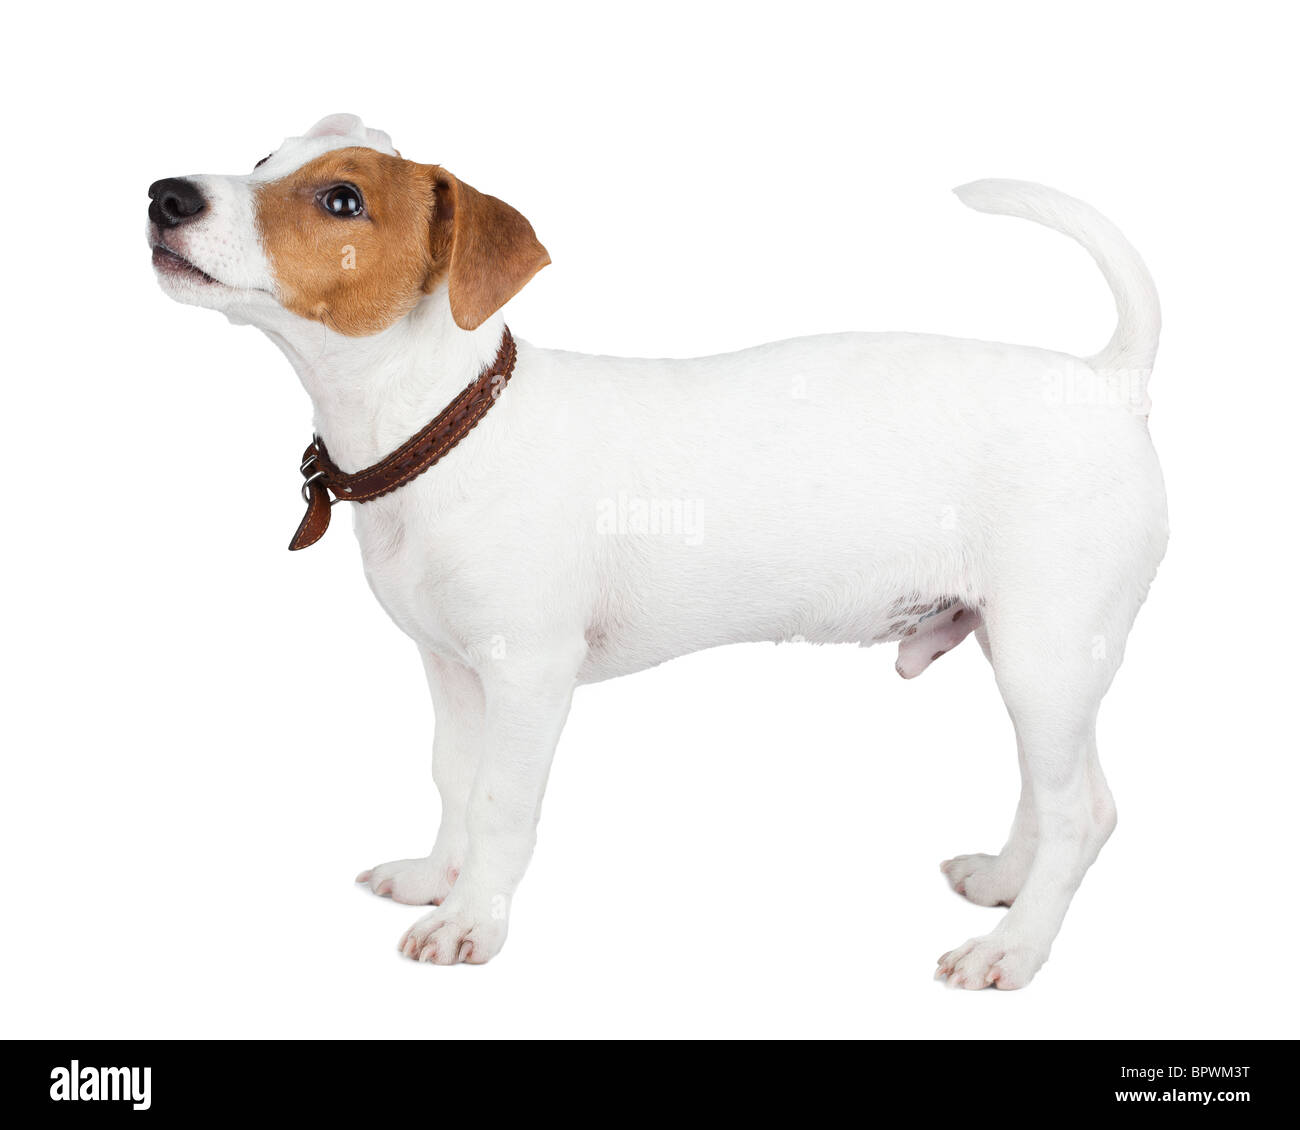 Welpen von einem Hund im Studio vor einem weißen Hintergrund. Eine Jack Russell Terrier ist ein Hund mit einem hohen Maß an Energie. Stockfoto